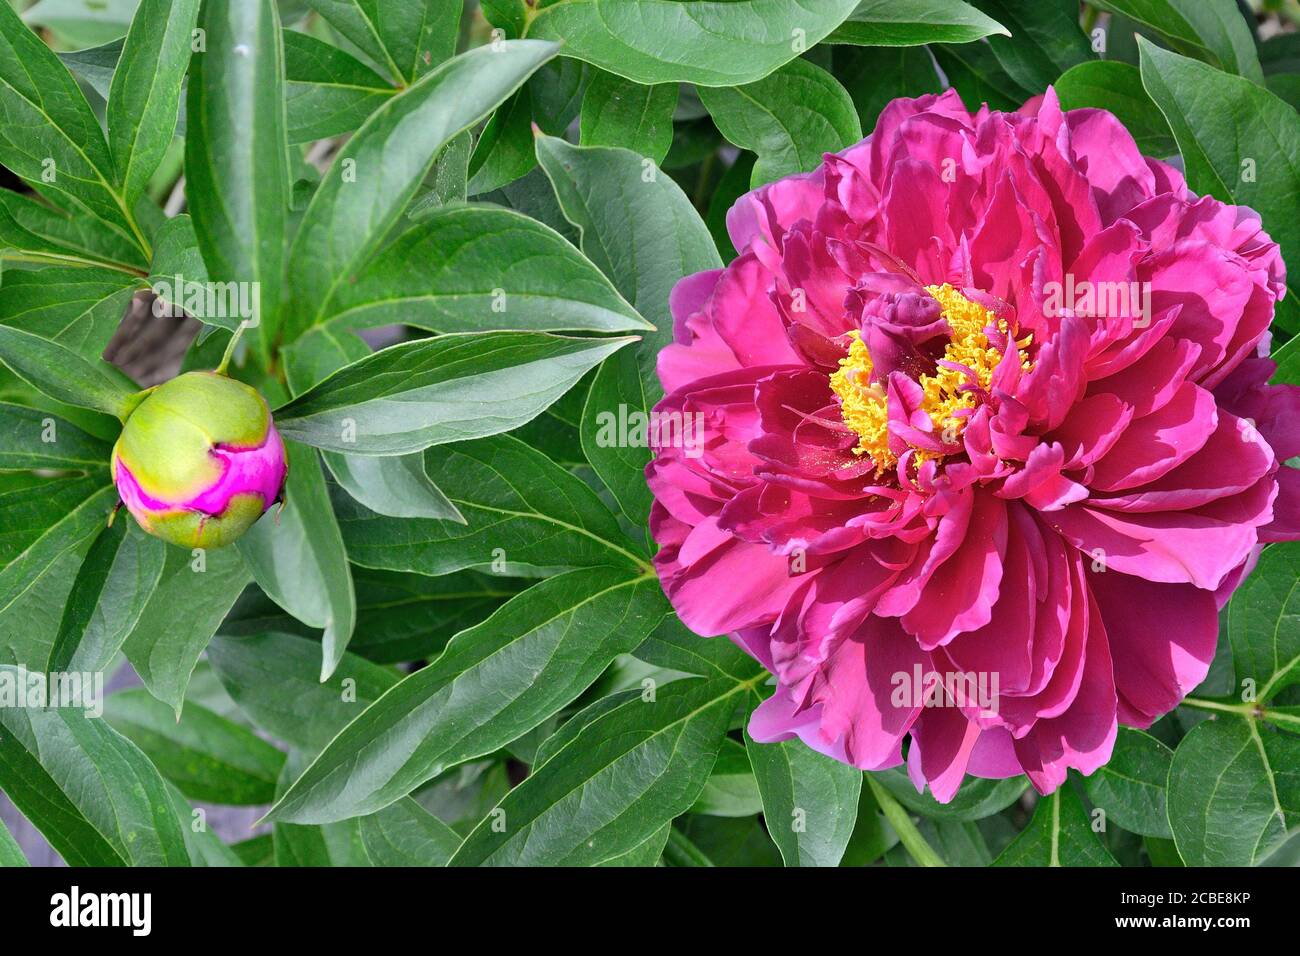 Belle fleur de pivoine rose (Paeonia suffruticosa) gros plan avec bouton et feuilles vertes sur le parterre à fleurs dans le jardin. Beauté de la nature, floriculture, gard Banque D'Images